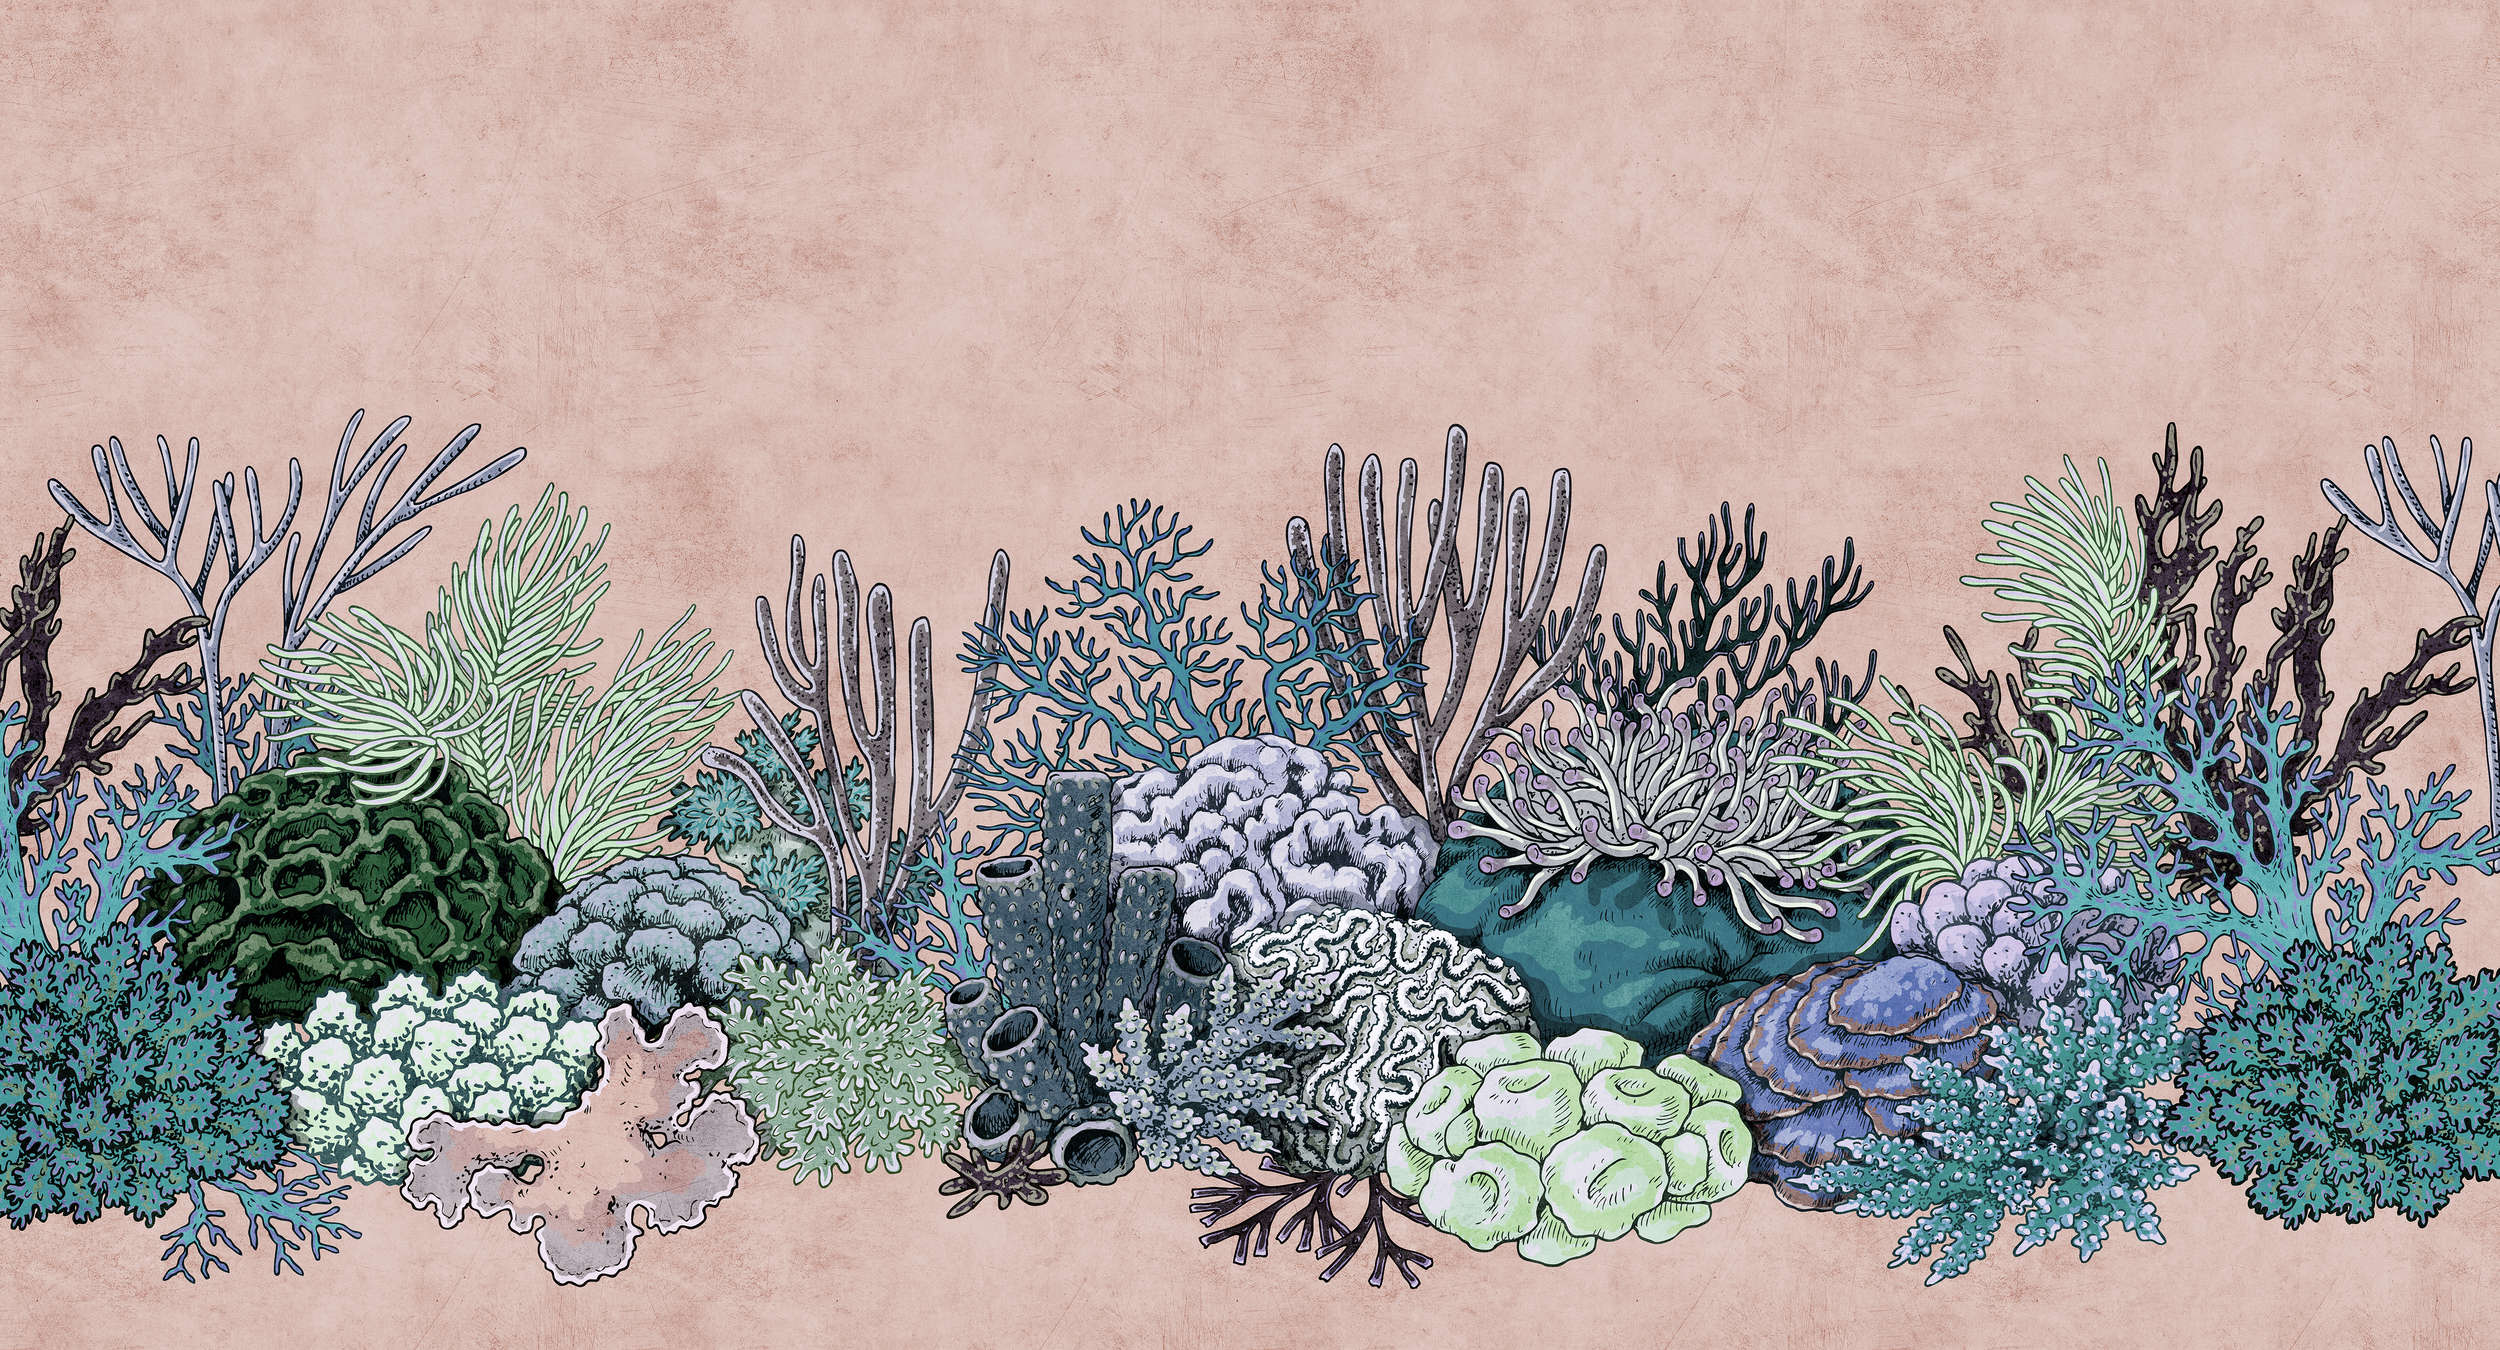             Octopus's Garden 2 - Koraalbehang in vloeipapierstructuur in tekenstijl - Groen, Roze | Mat glad vlies
        